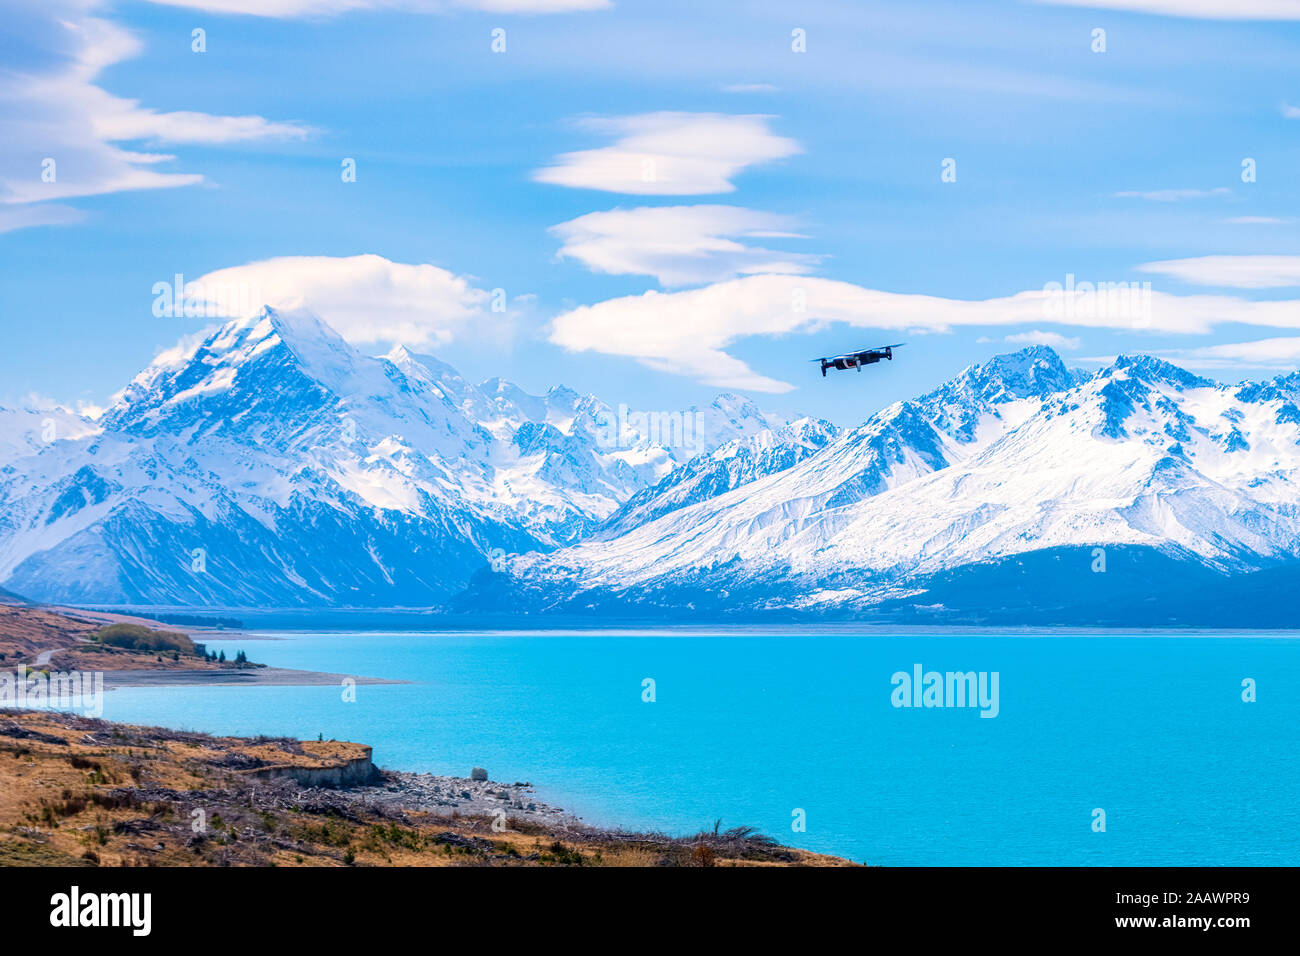 New Zealand, South Island, Scenic mountainous landscape of Lake Pukaki Stock Photo